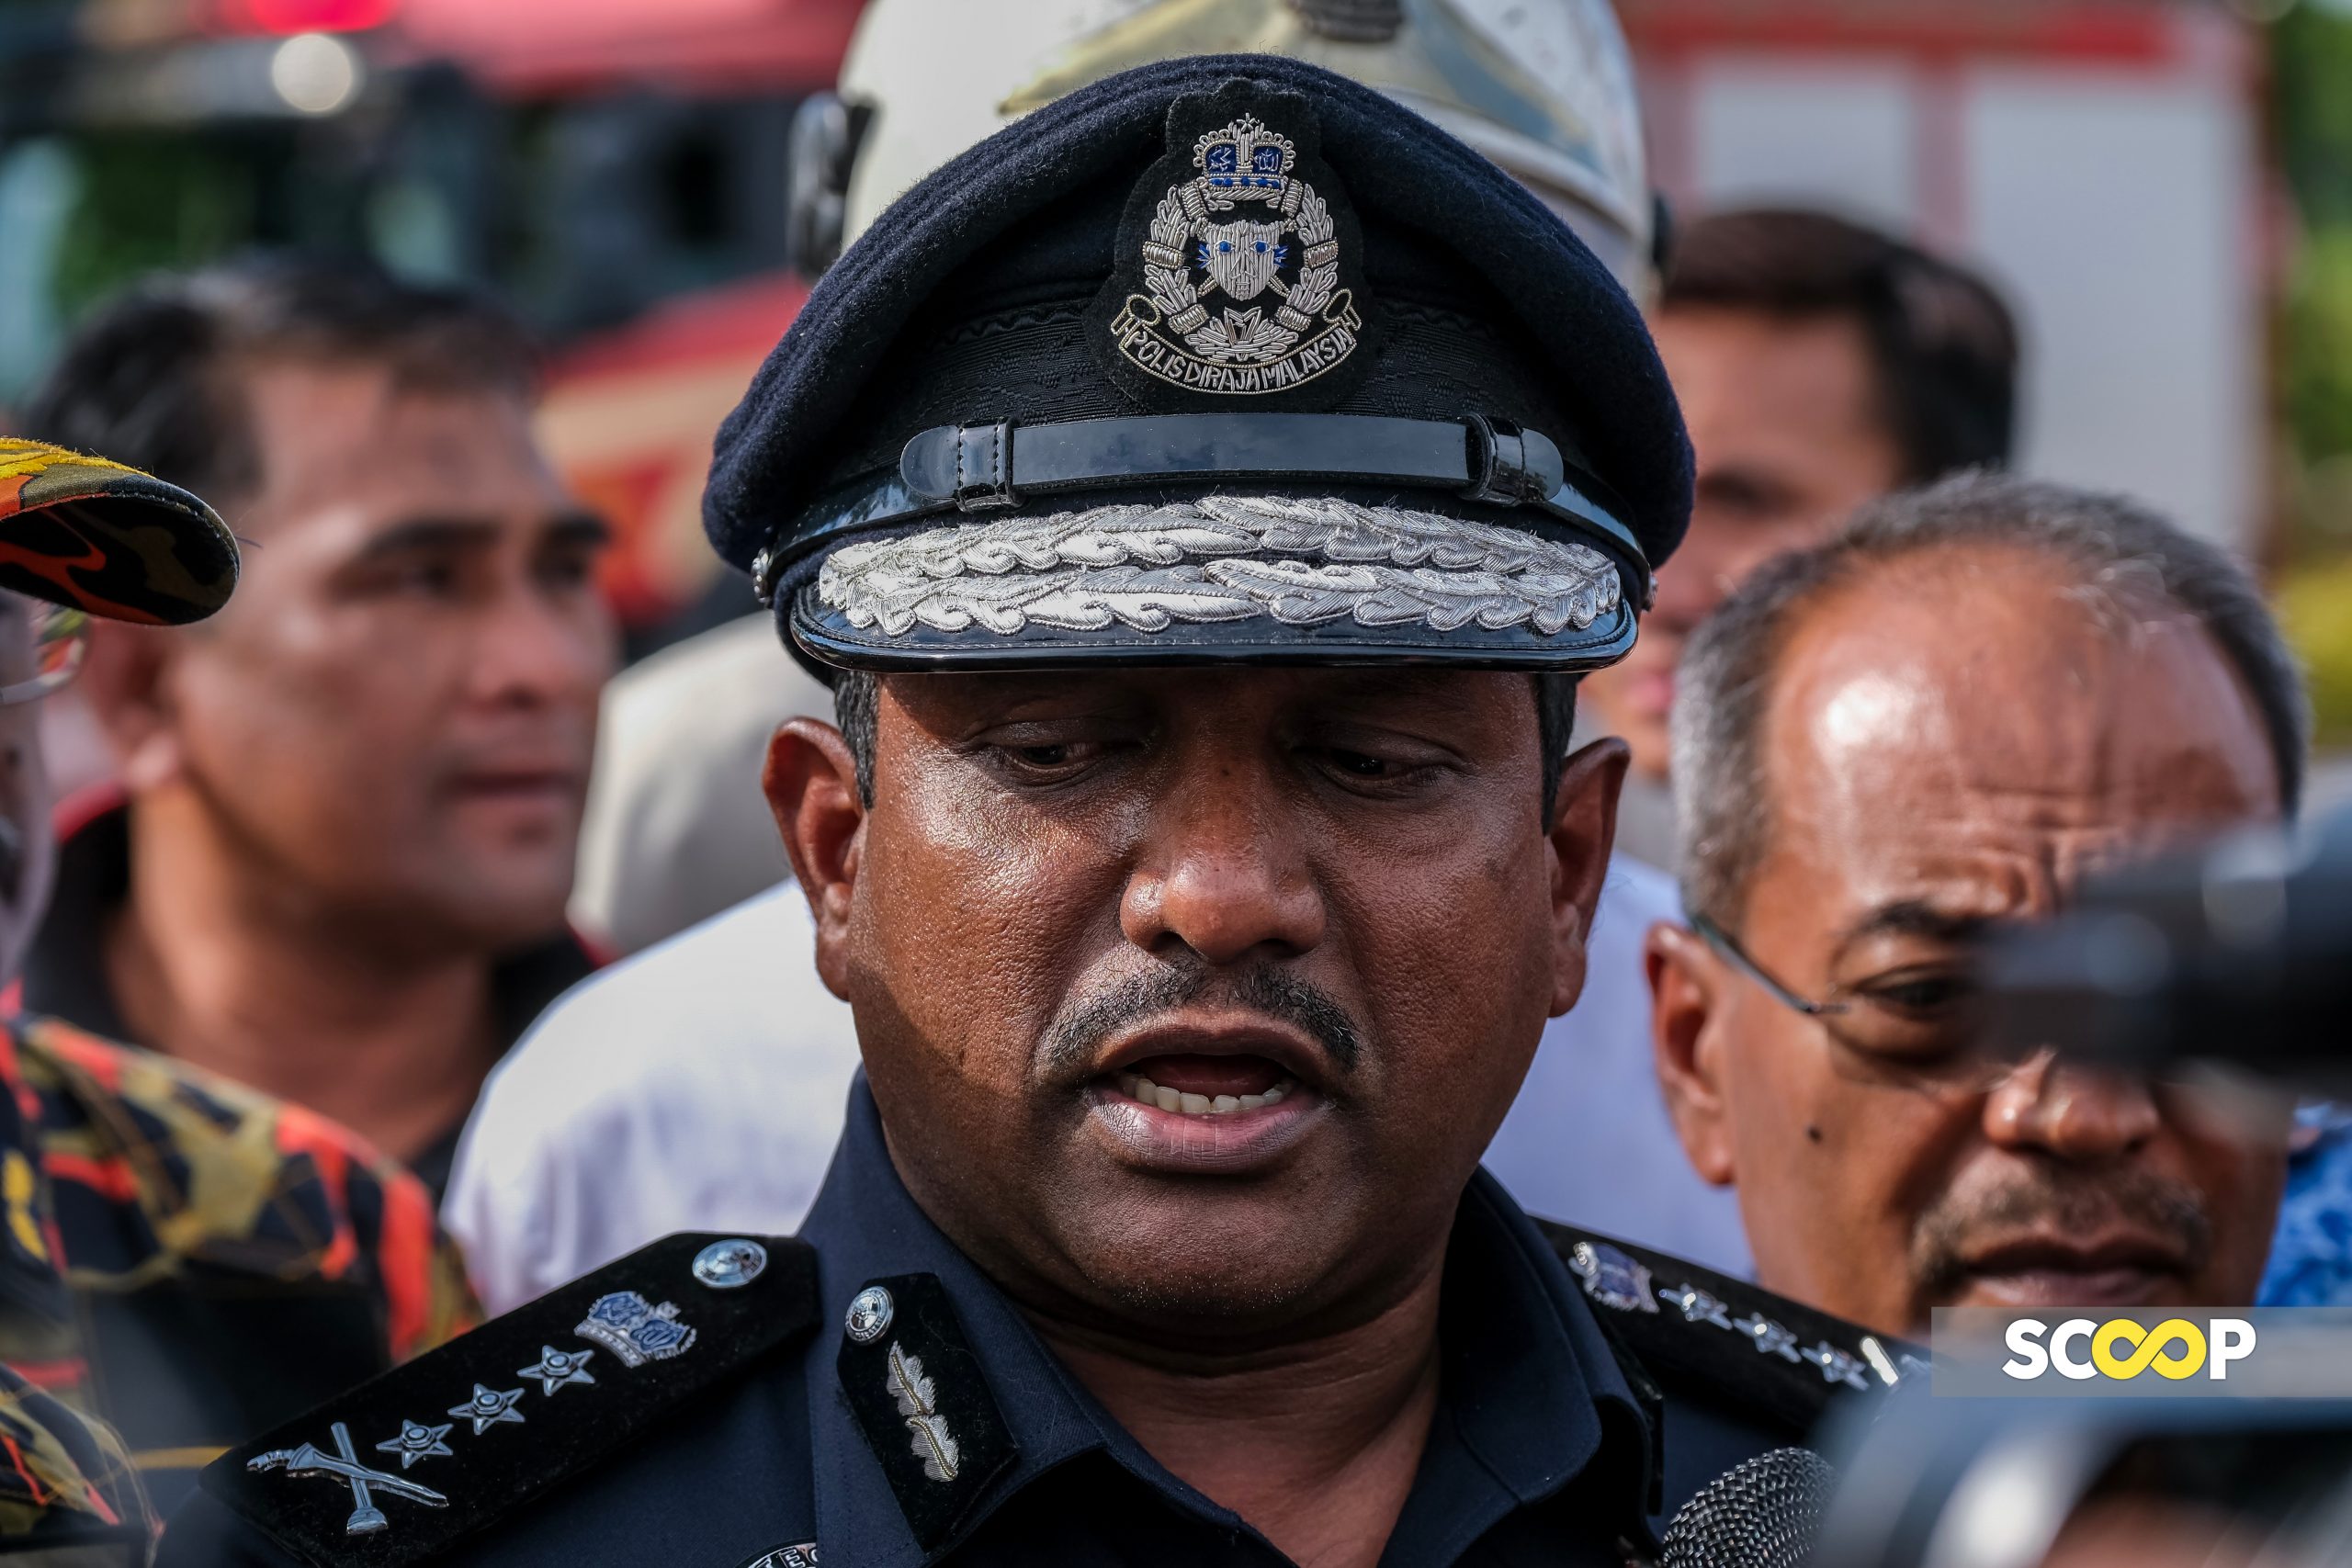 Mayat mangsa tidak sempurna kesan pesawat berkecai: Ketua Polis Selangor